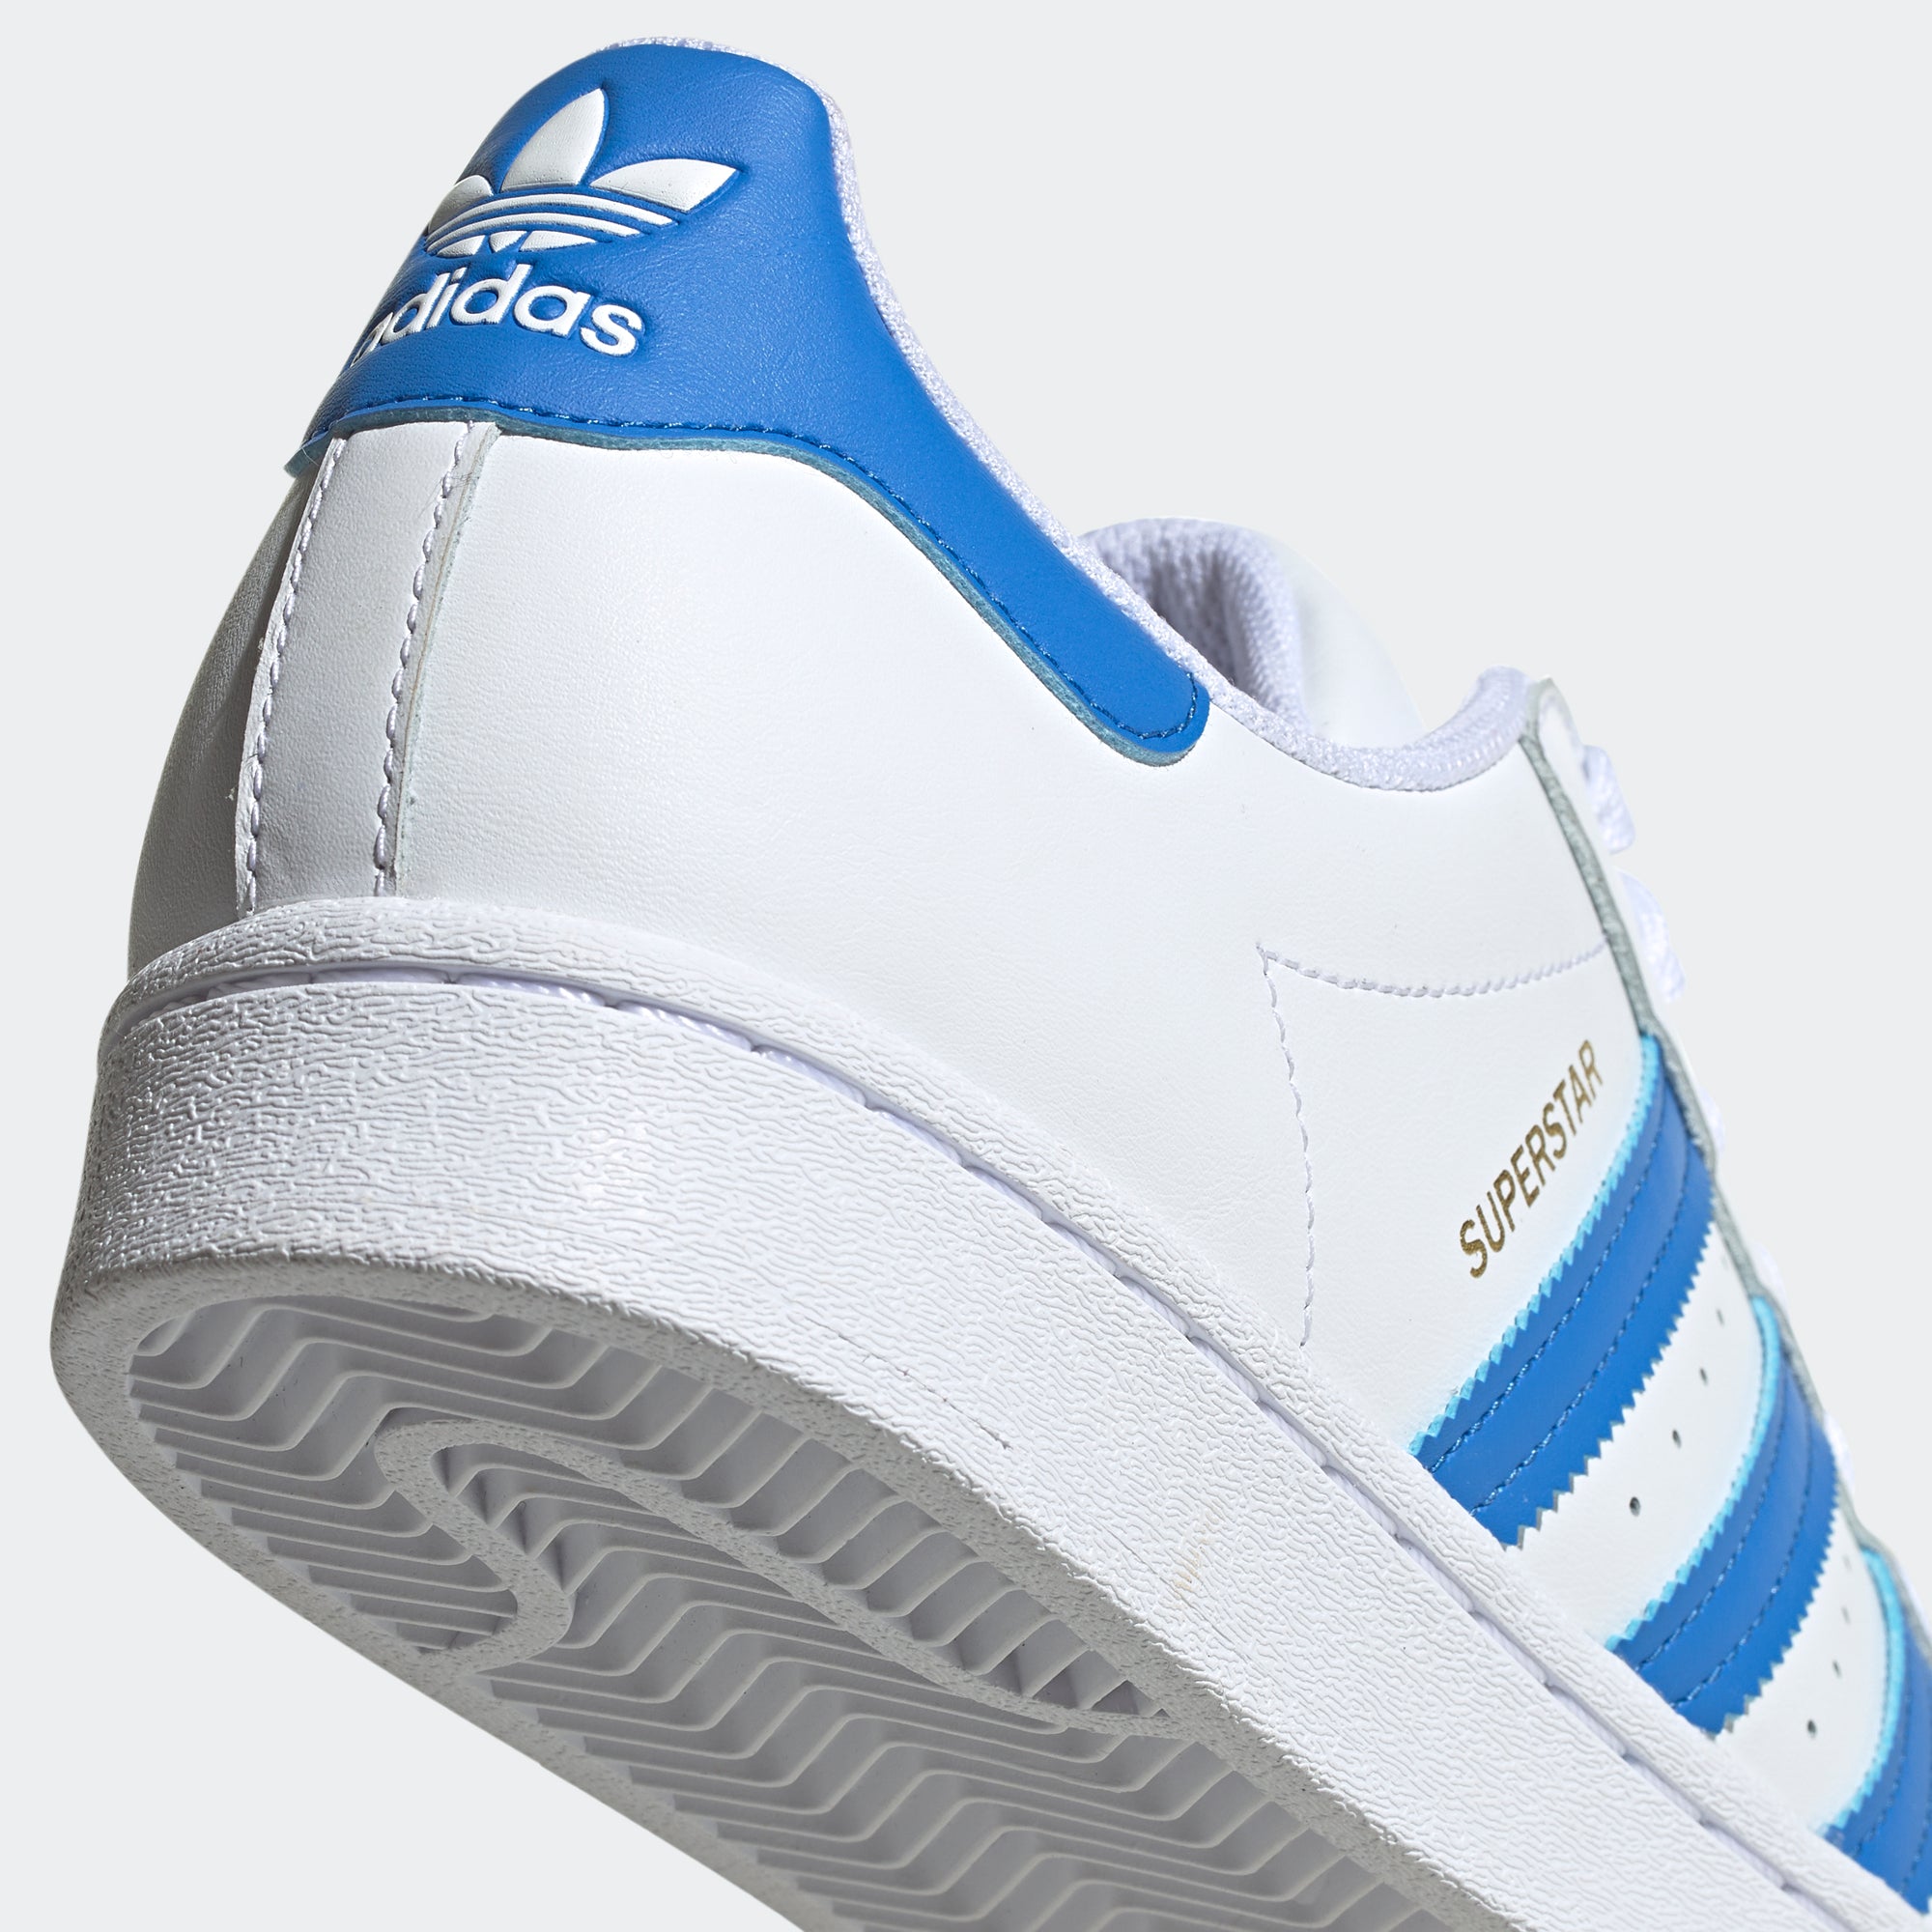 Vernietigen komen Ronde adidas Superstar Shoes White Blue H68093 | Chicago City Sports